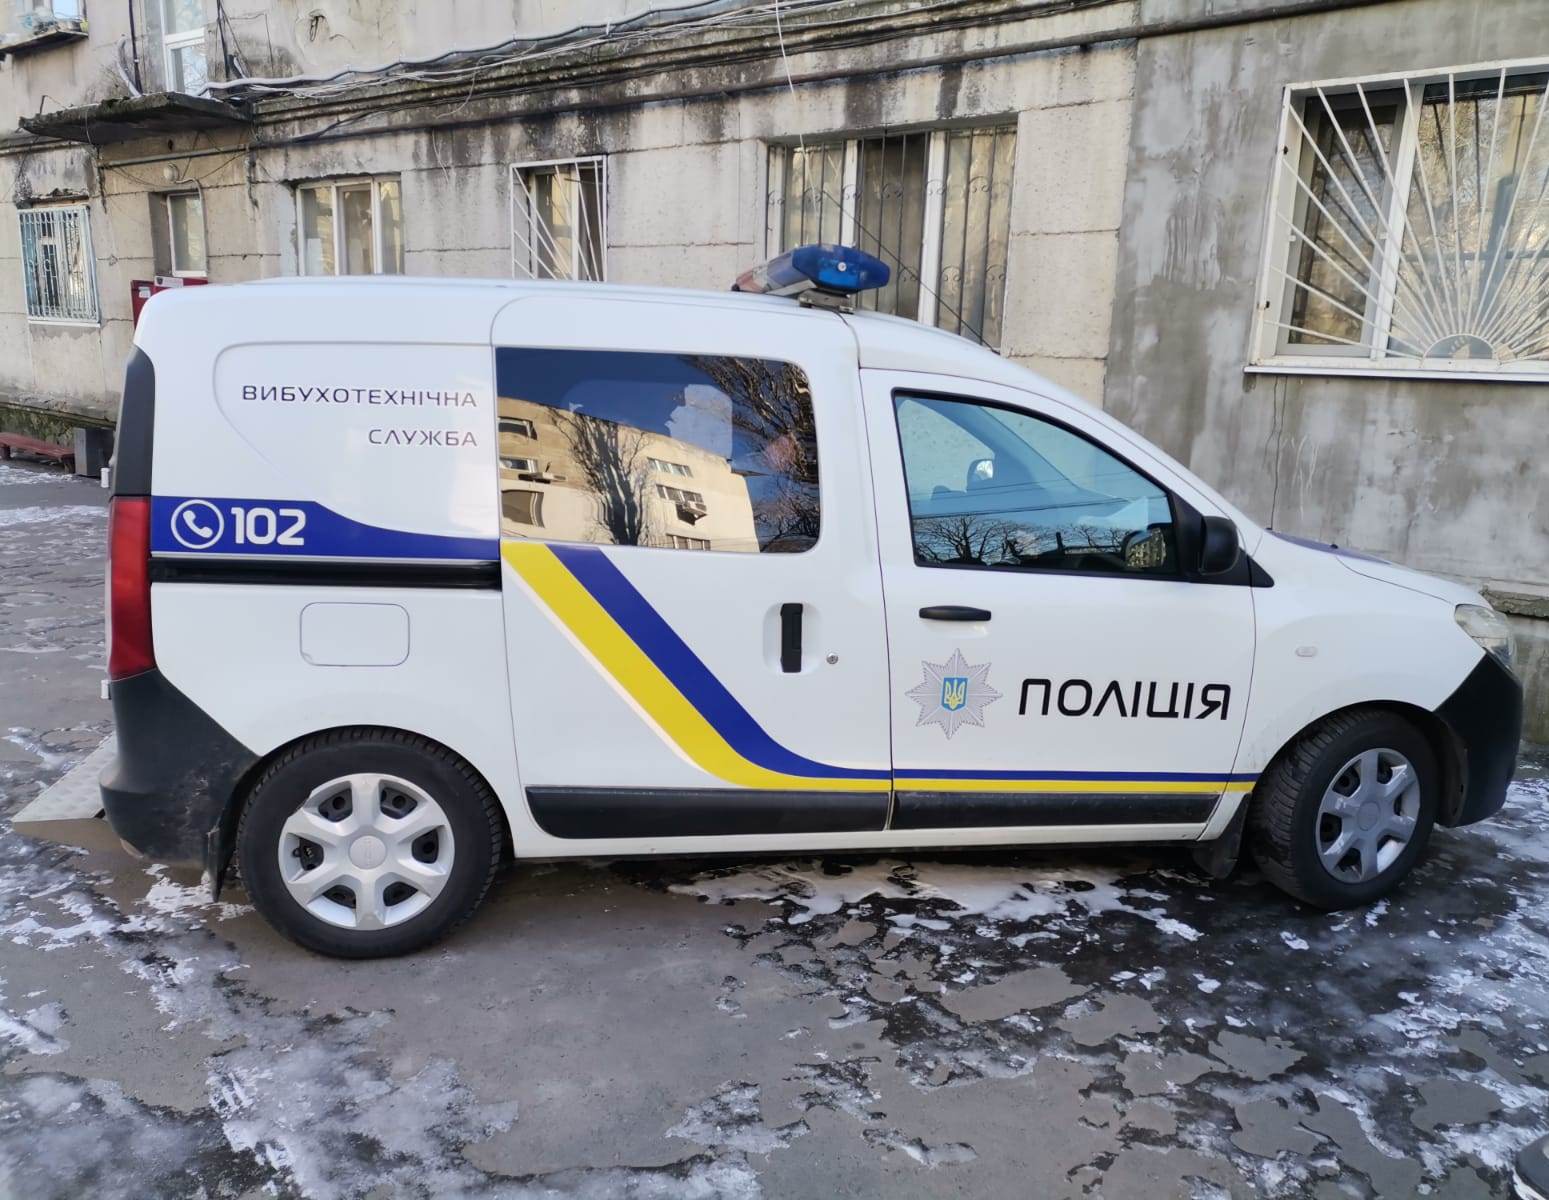 РГД-5 по 2000 грн: в Одесі затримали чоловіка під час продажу бойової гранати